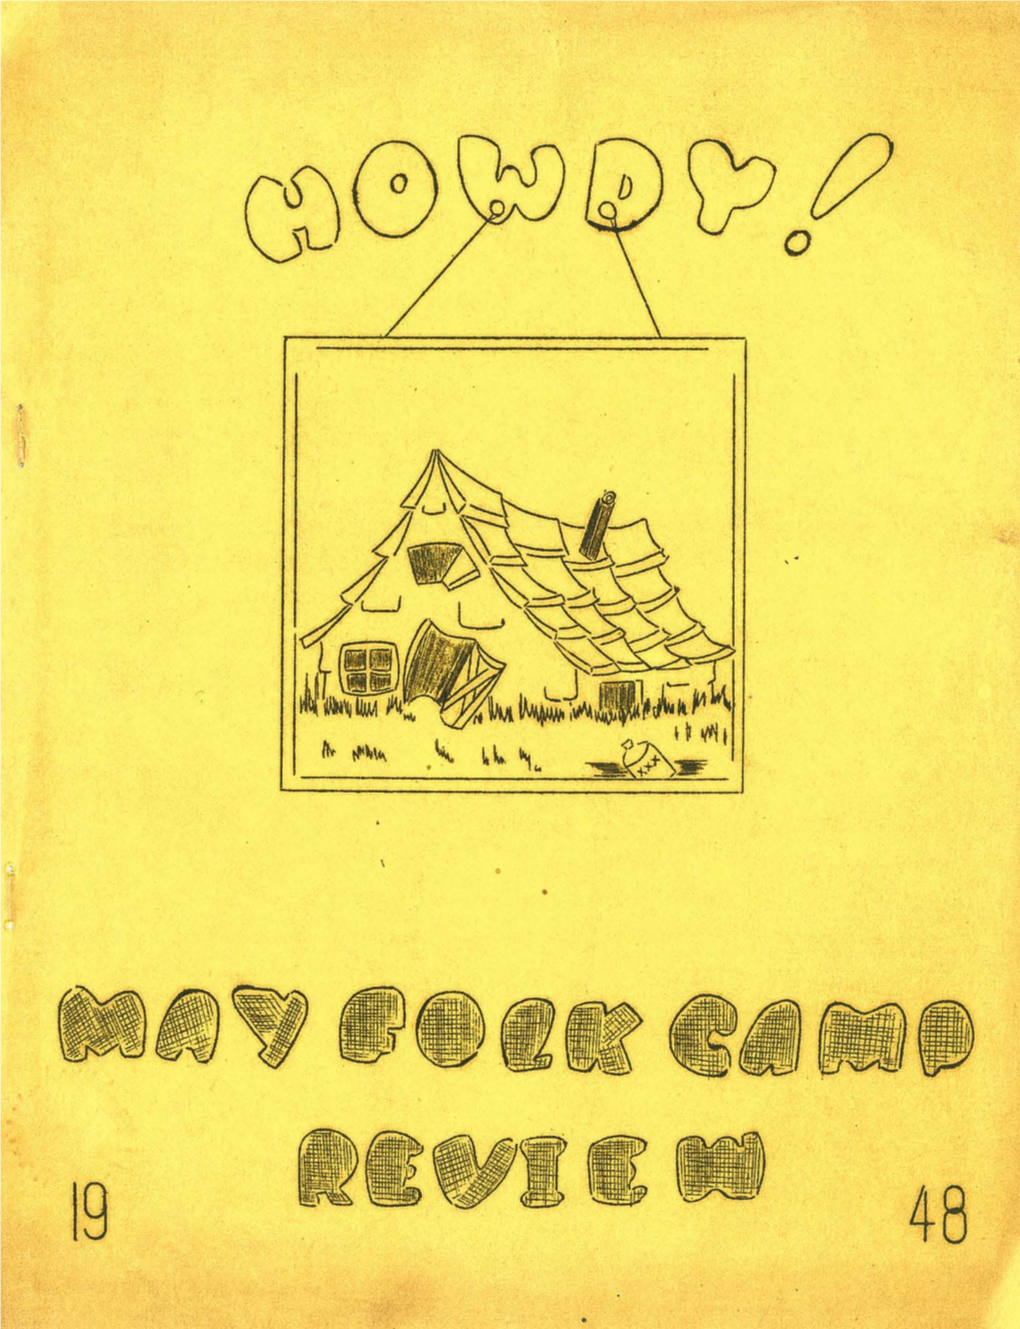 1948-05 May Folk Camp Review